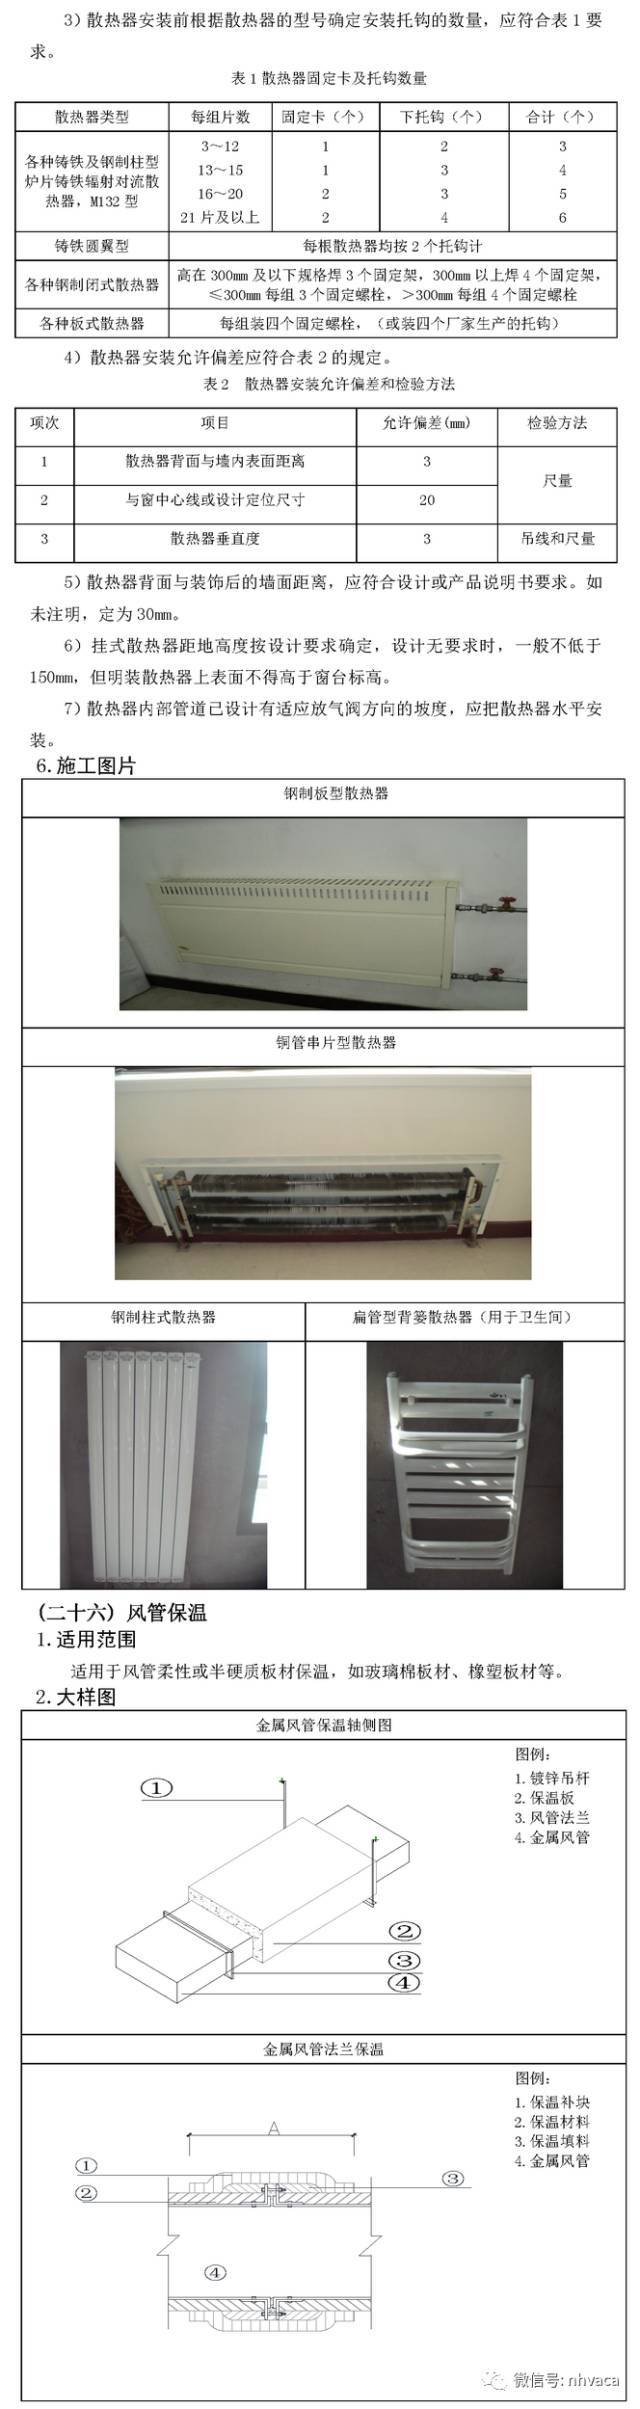 暖通空调施工工艺标准图集-超多案例_49